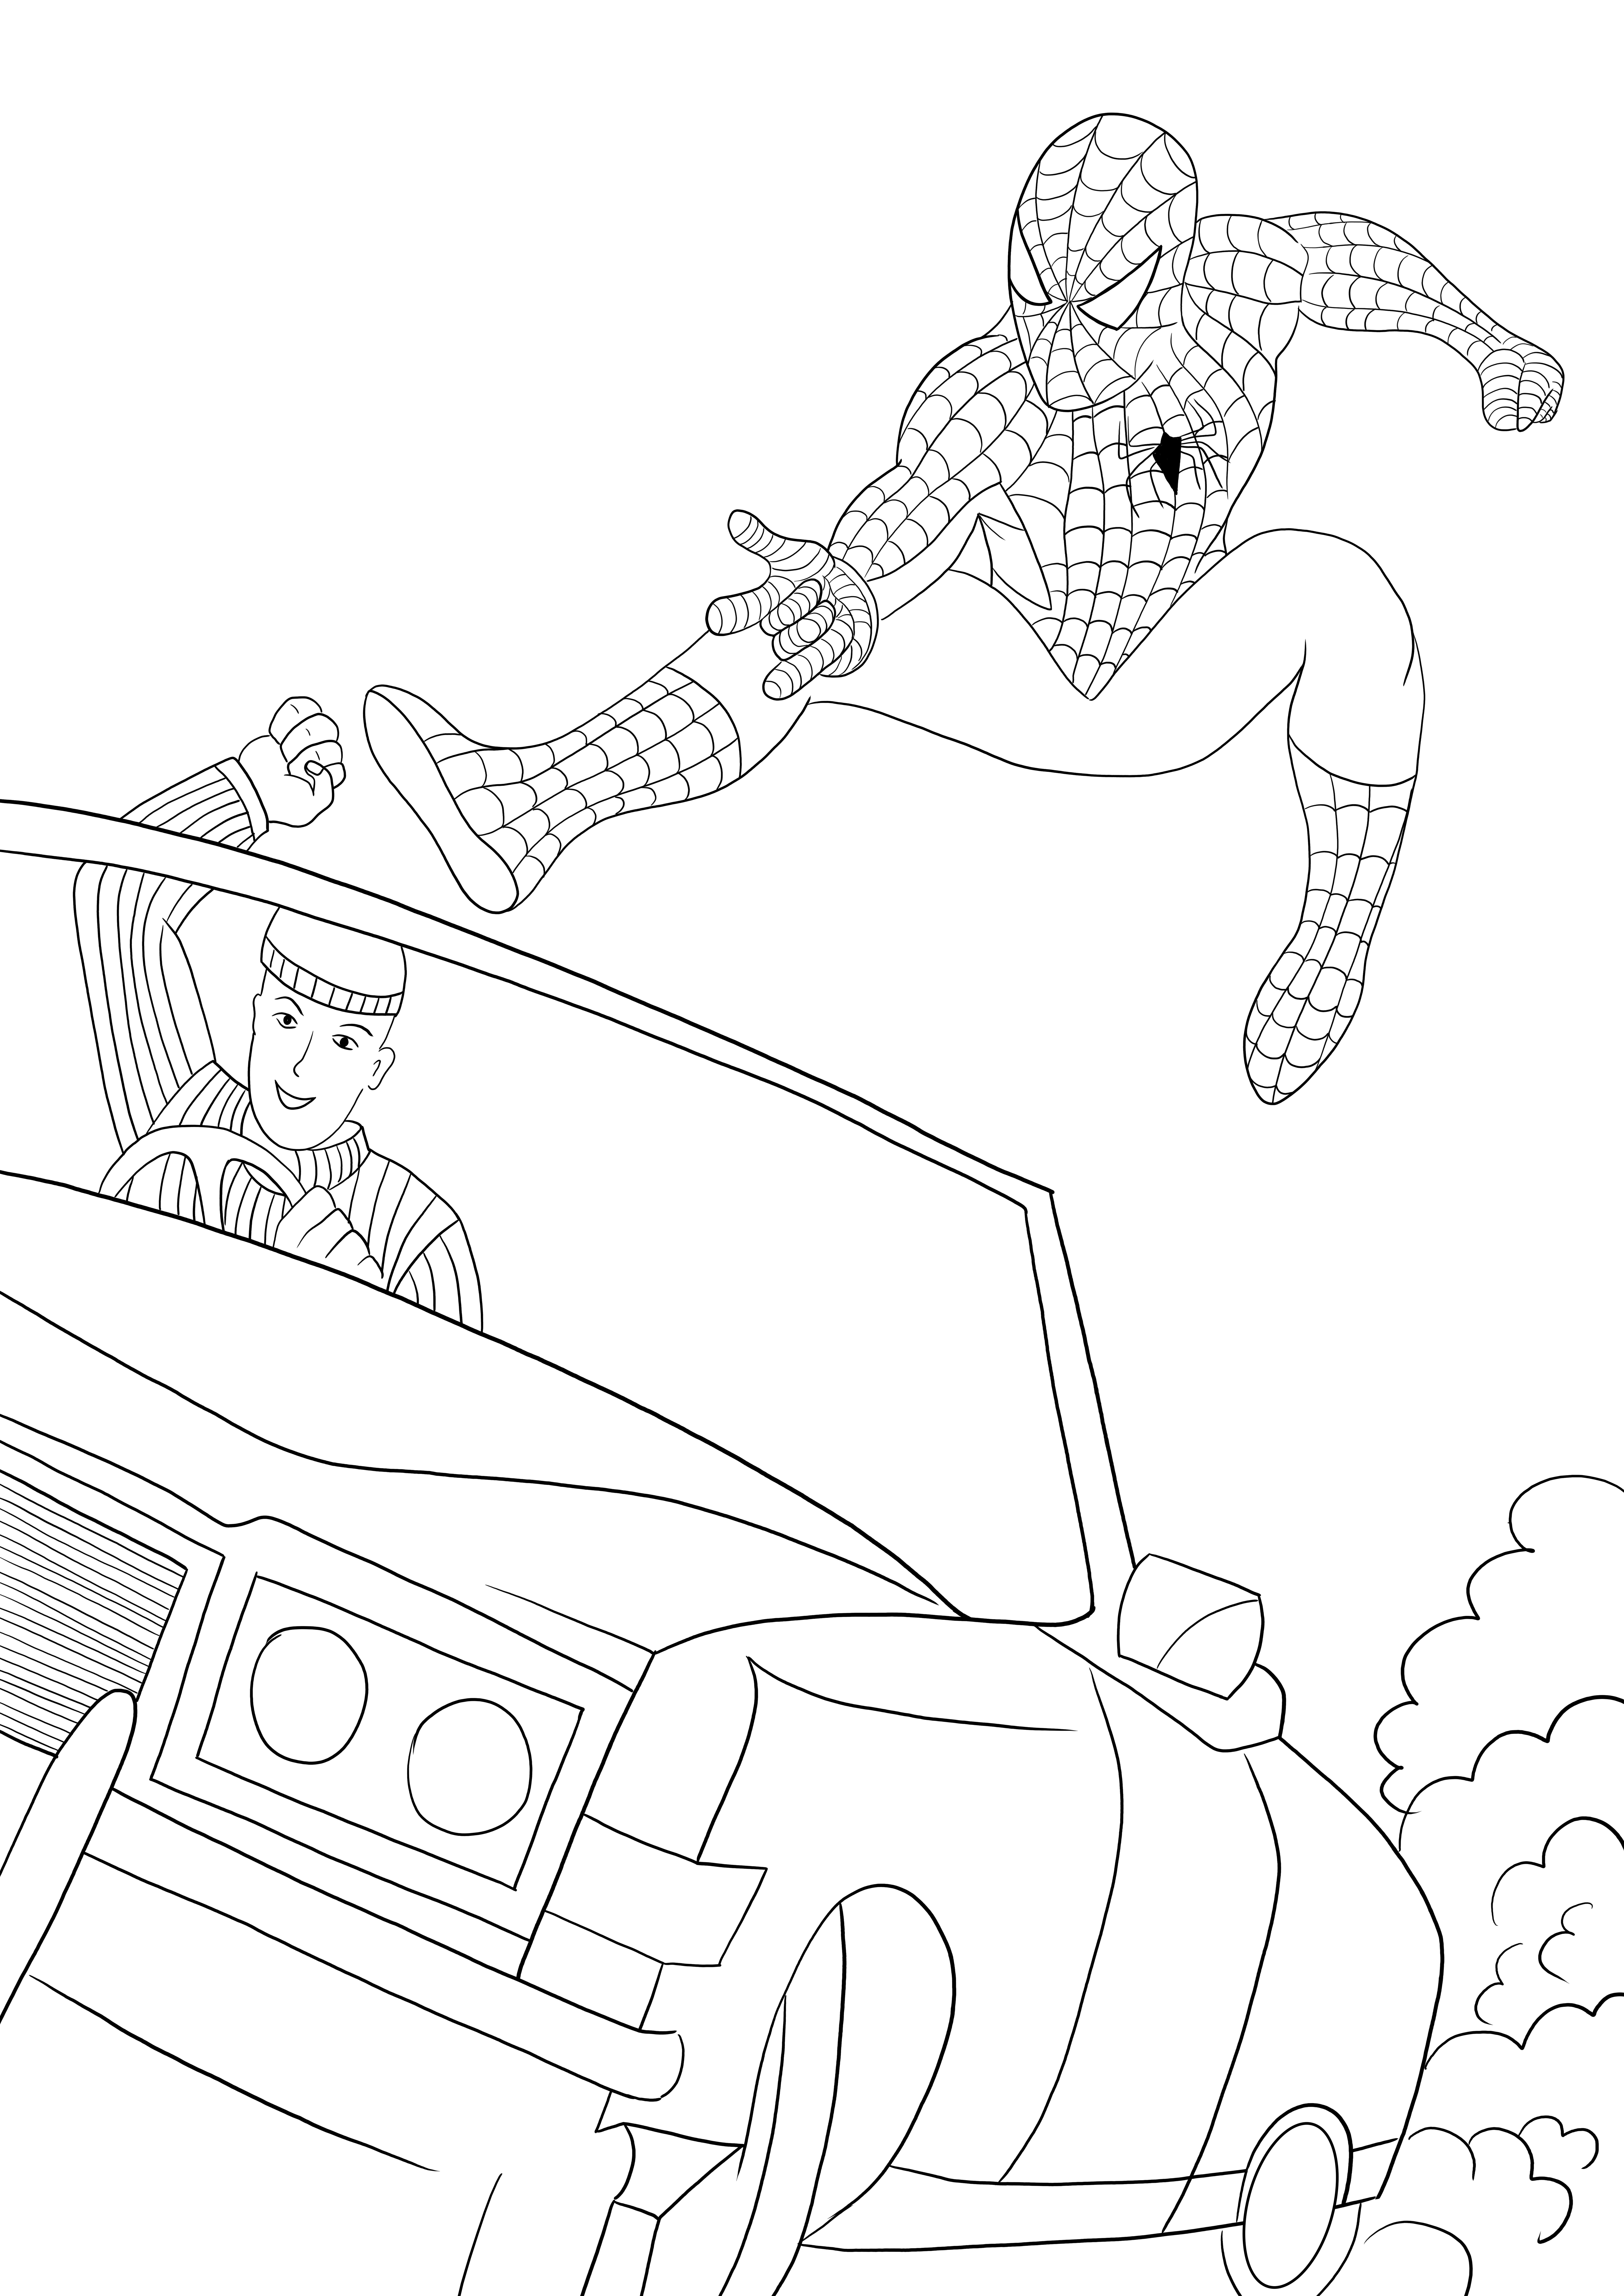 Spider-Man pegando o ladrão simples para colorir e imprimir de graça